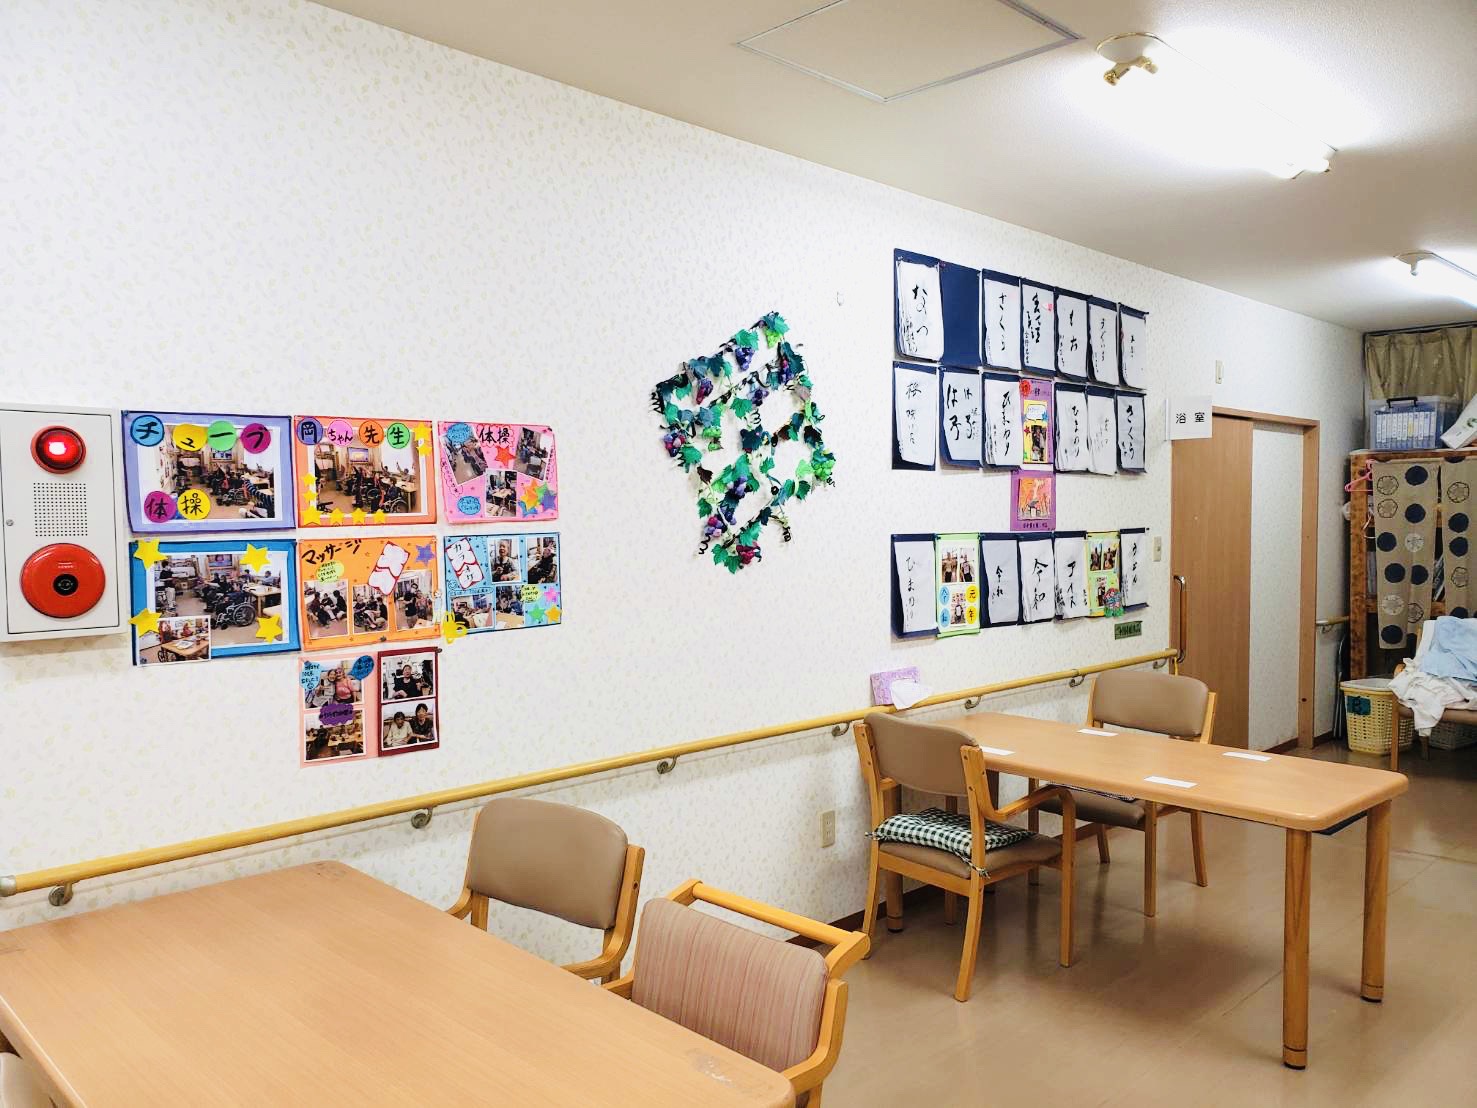 「ナーシング三重」三重県亀山市のサービス付き高齢者向け住宅